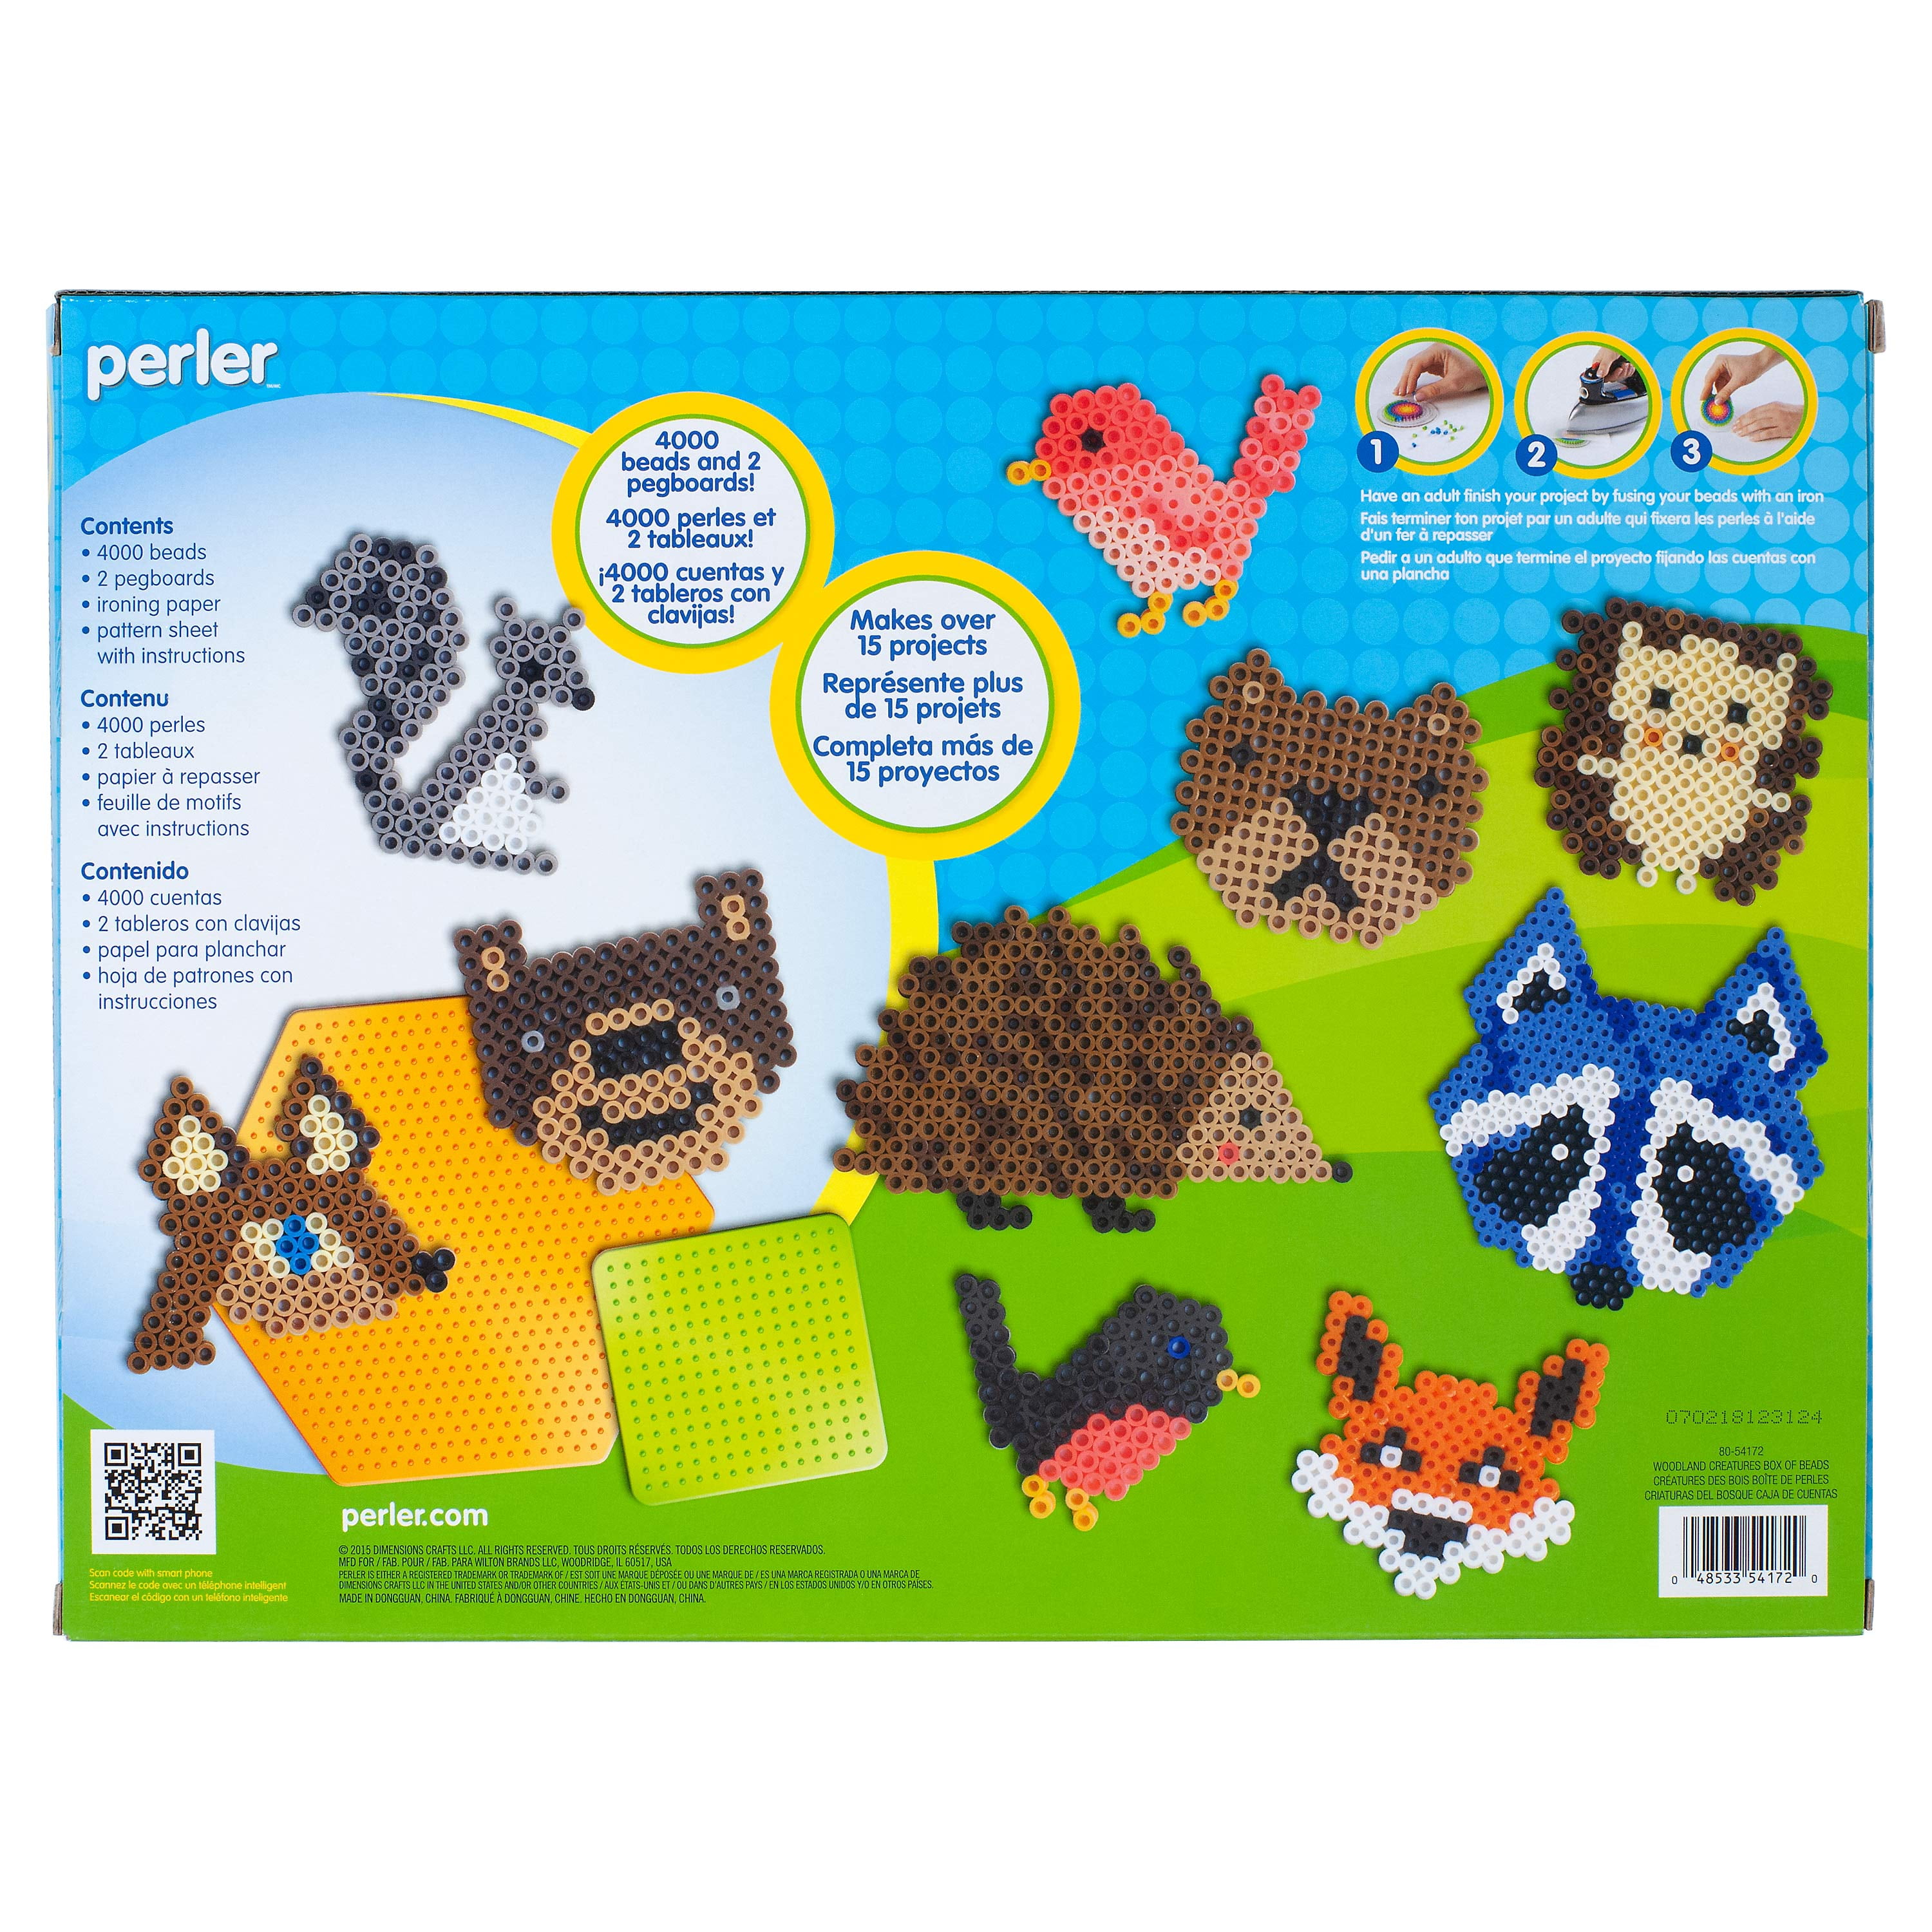 Animal Print Perler Bead Kit Review